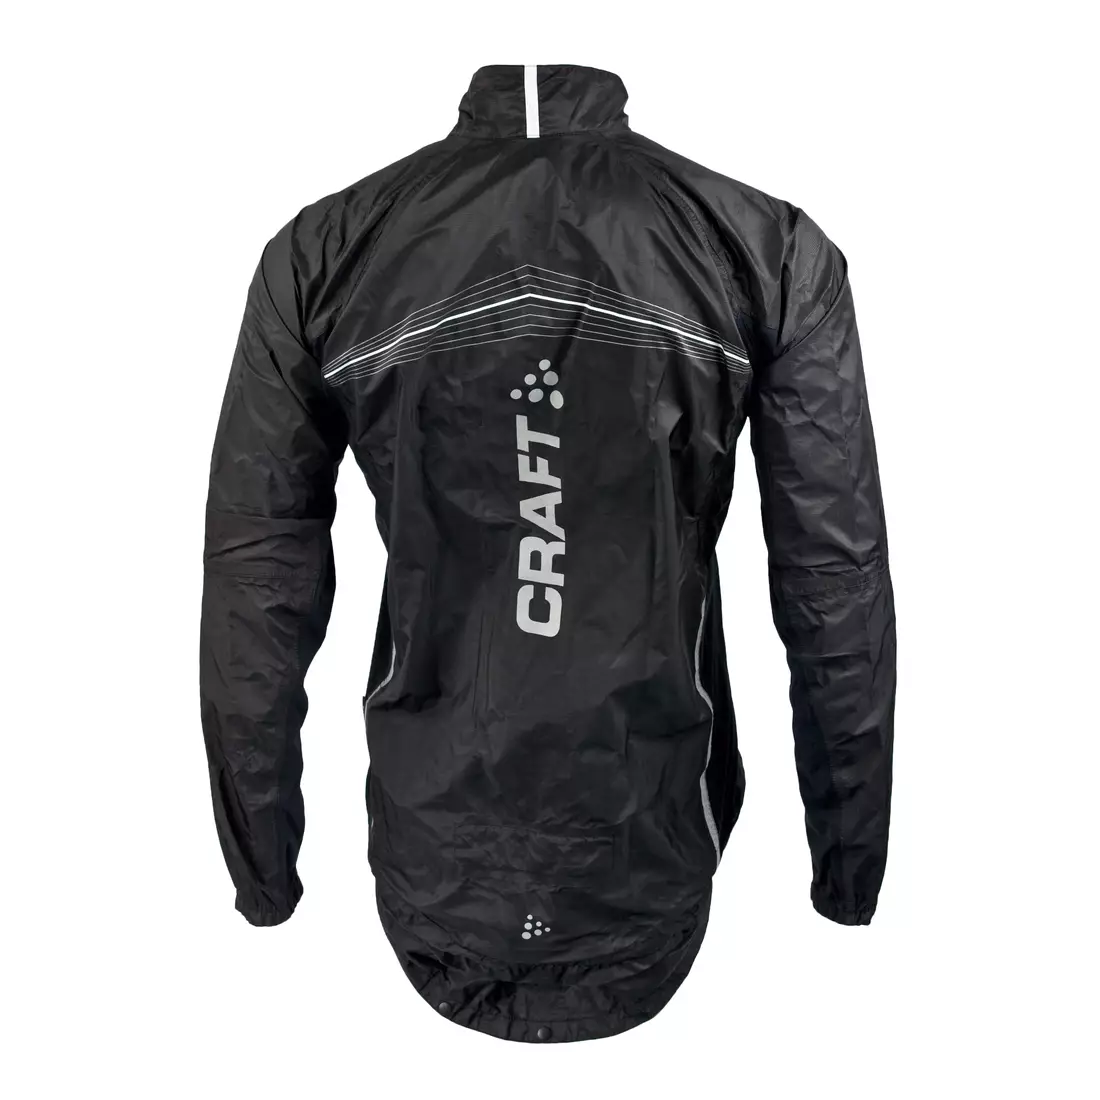 CRAFT ELITE BIKE - nepromokavá pánská cyklistická bunda 1902576-9900, barva: černá